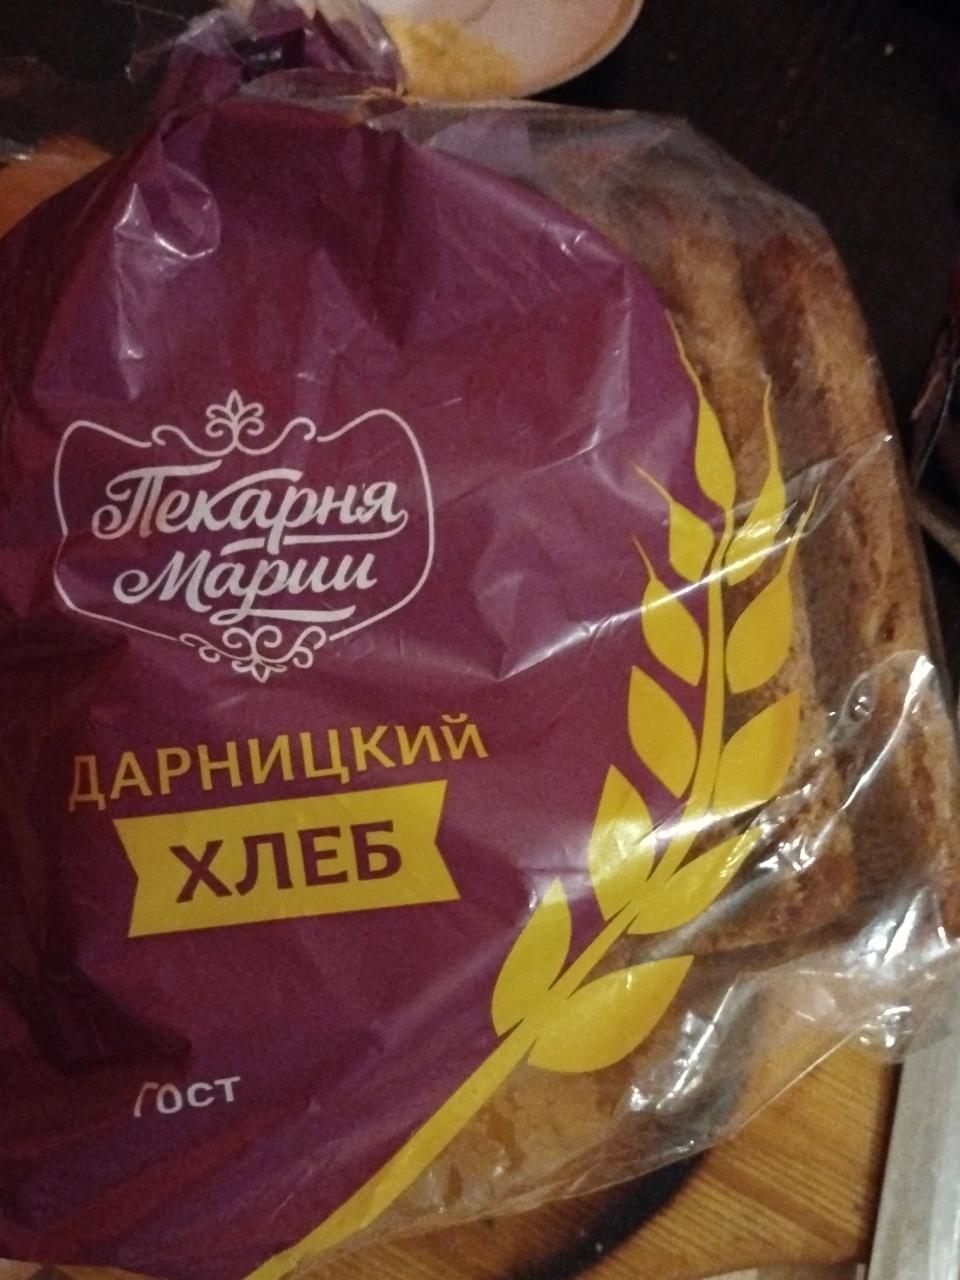 Фото - Дарницкий хлеб ГОСТ Пекарня Марии